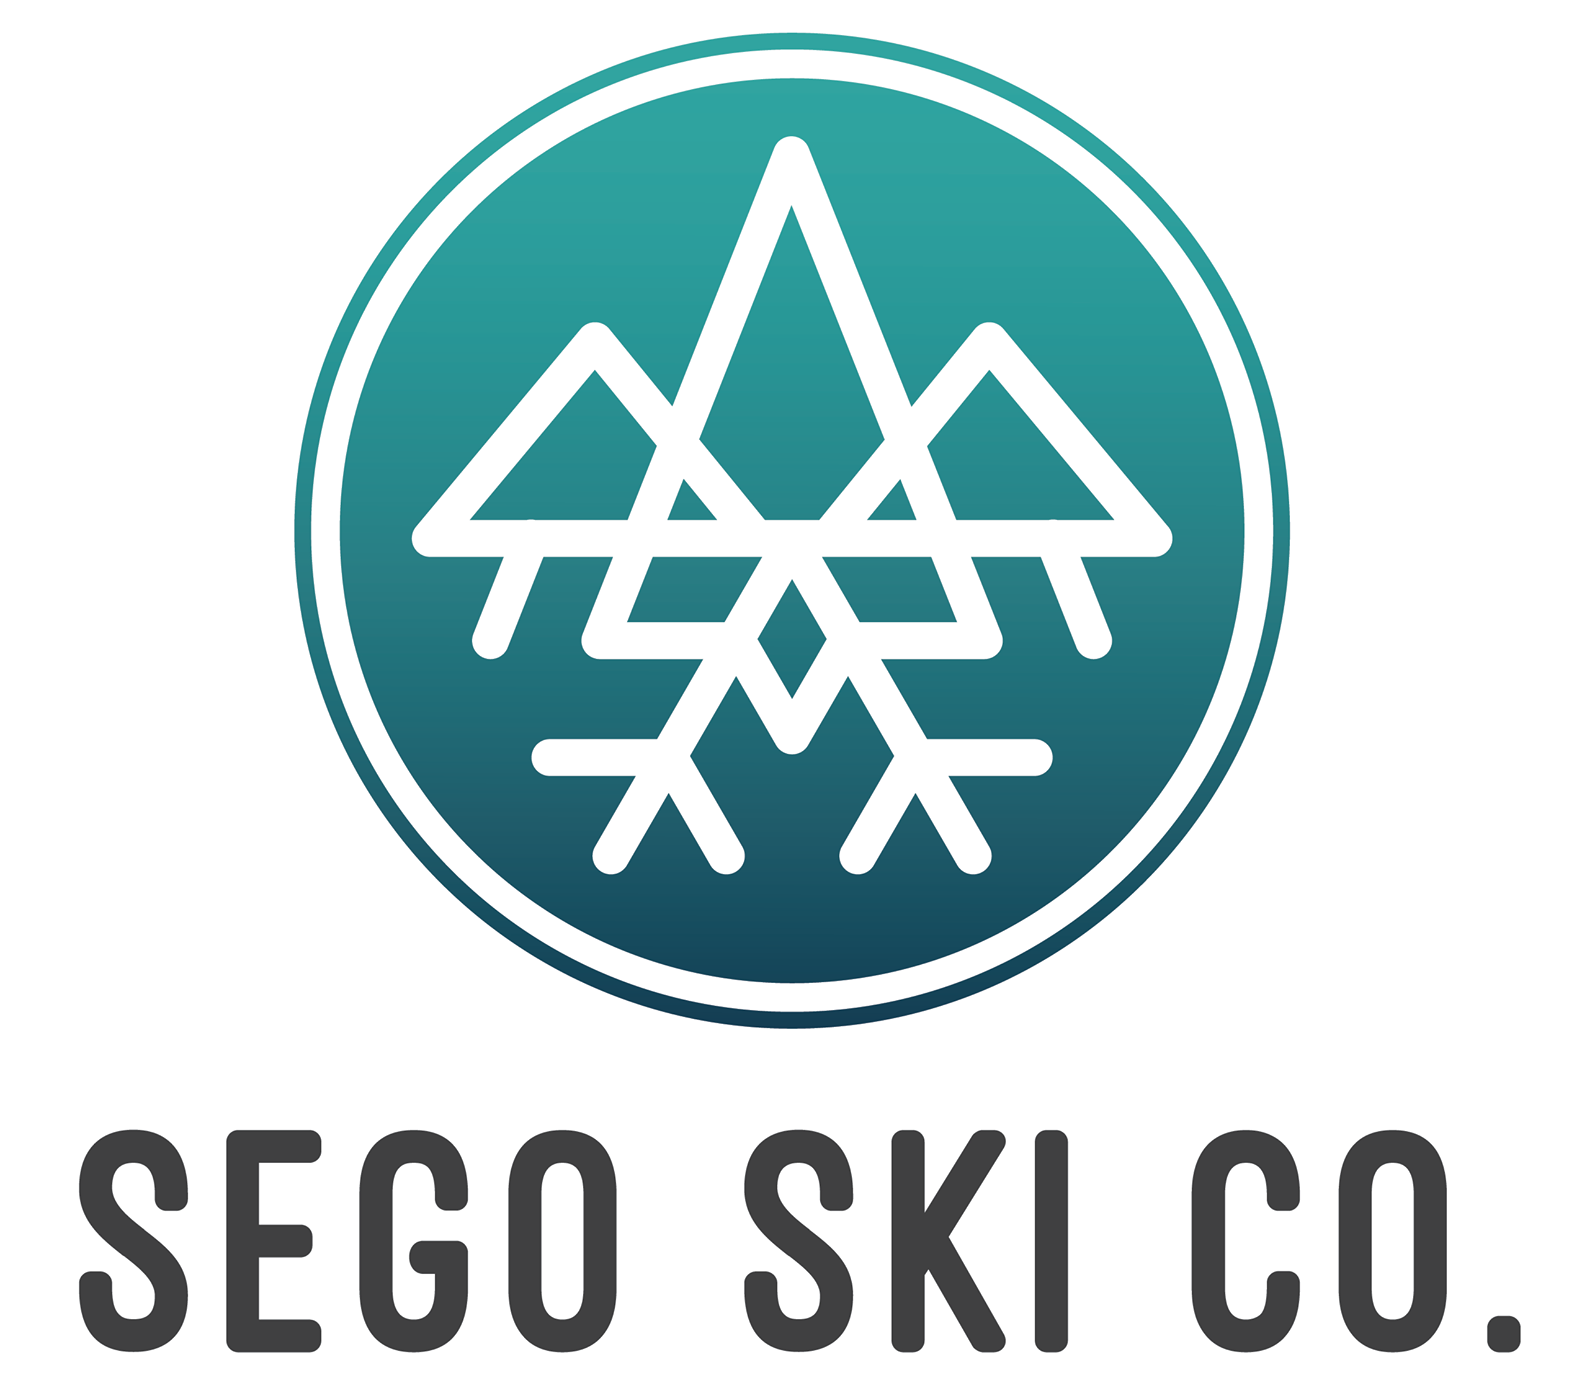 Sego Skis logo